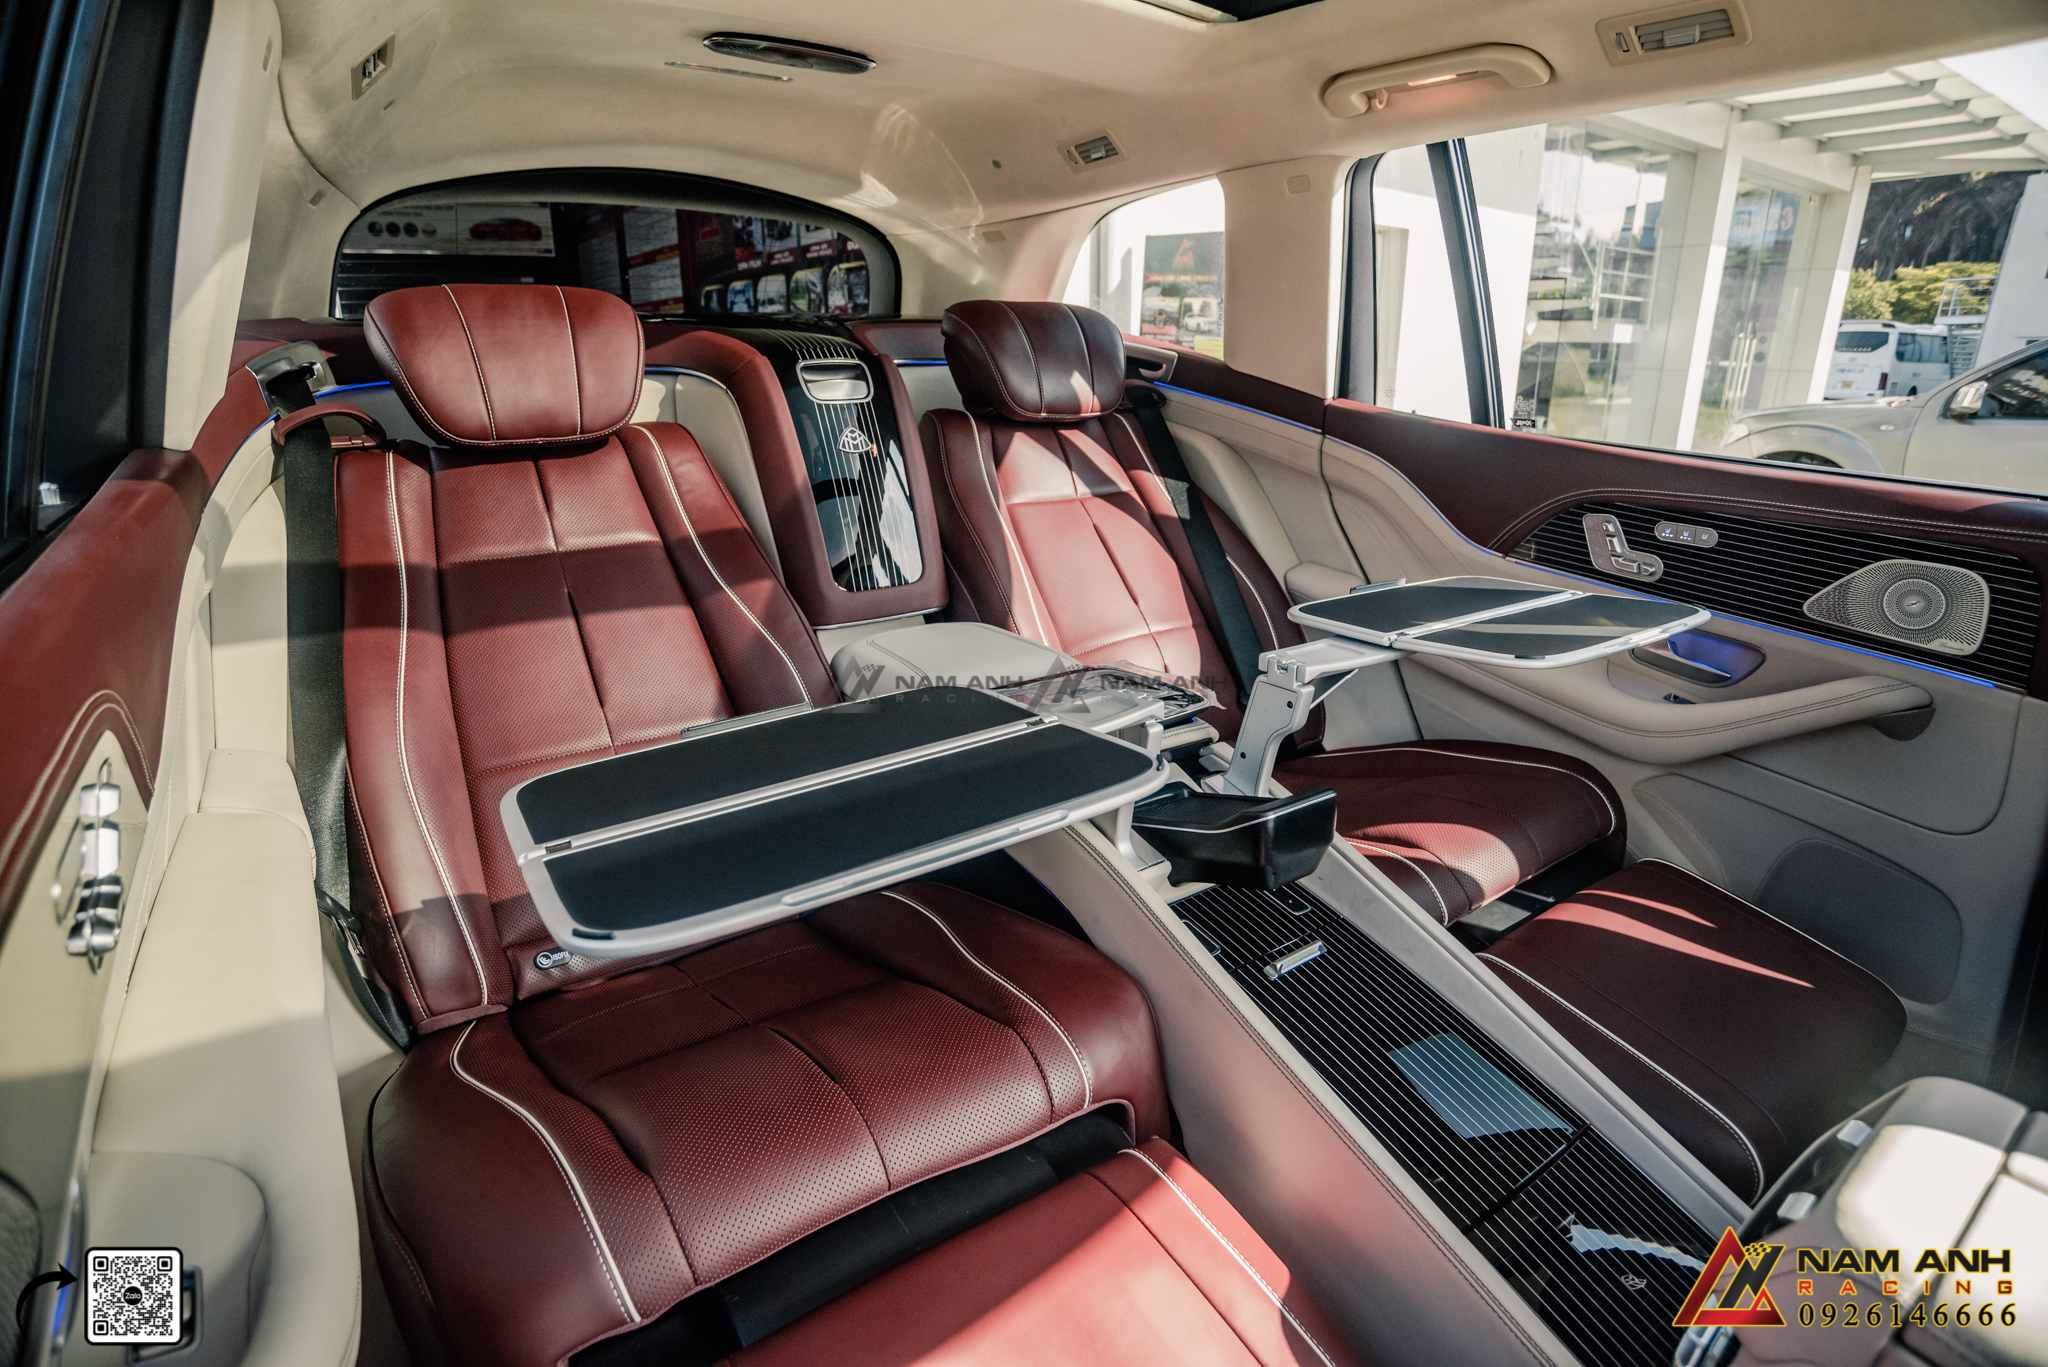 Nâng cấp ghế ngồi trong một chiếc Mercedes là một bước quan trọng trong việc cá nhân hóa và nâng cao trải nghiệm lái xe, phản ánh không chỉ sự sang trọng mà còn cả sự tinh tế và đẳng cấp của chủ sở hữu.